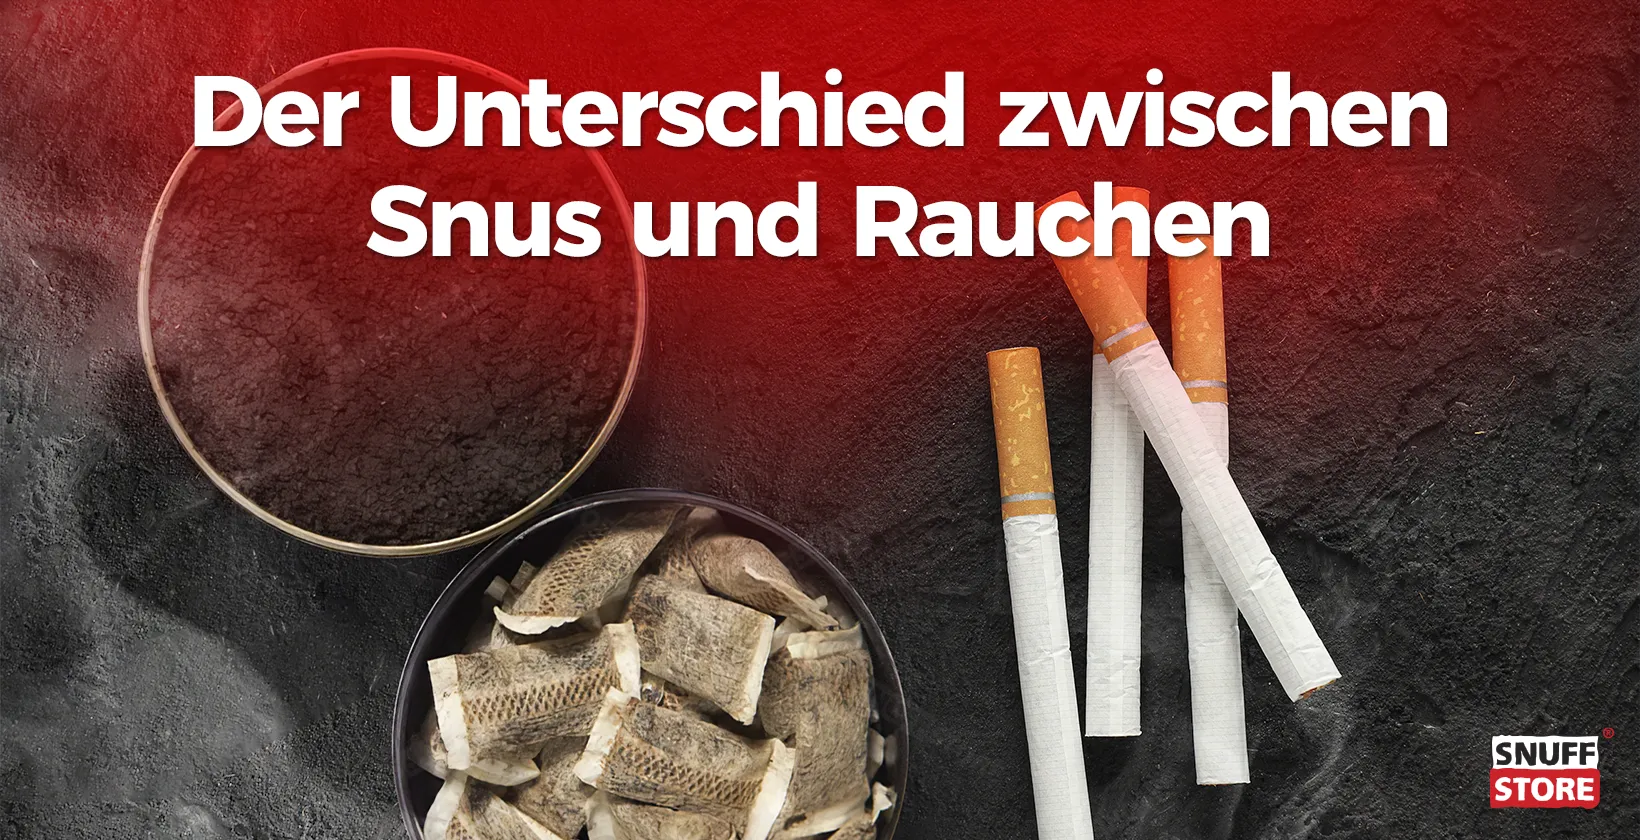 Snus versus Rauchen